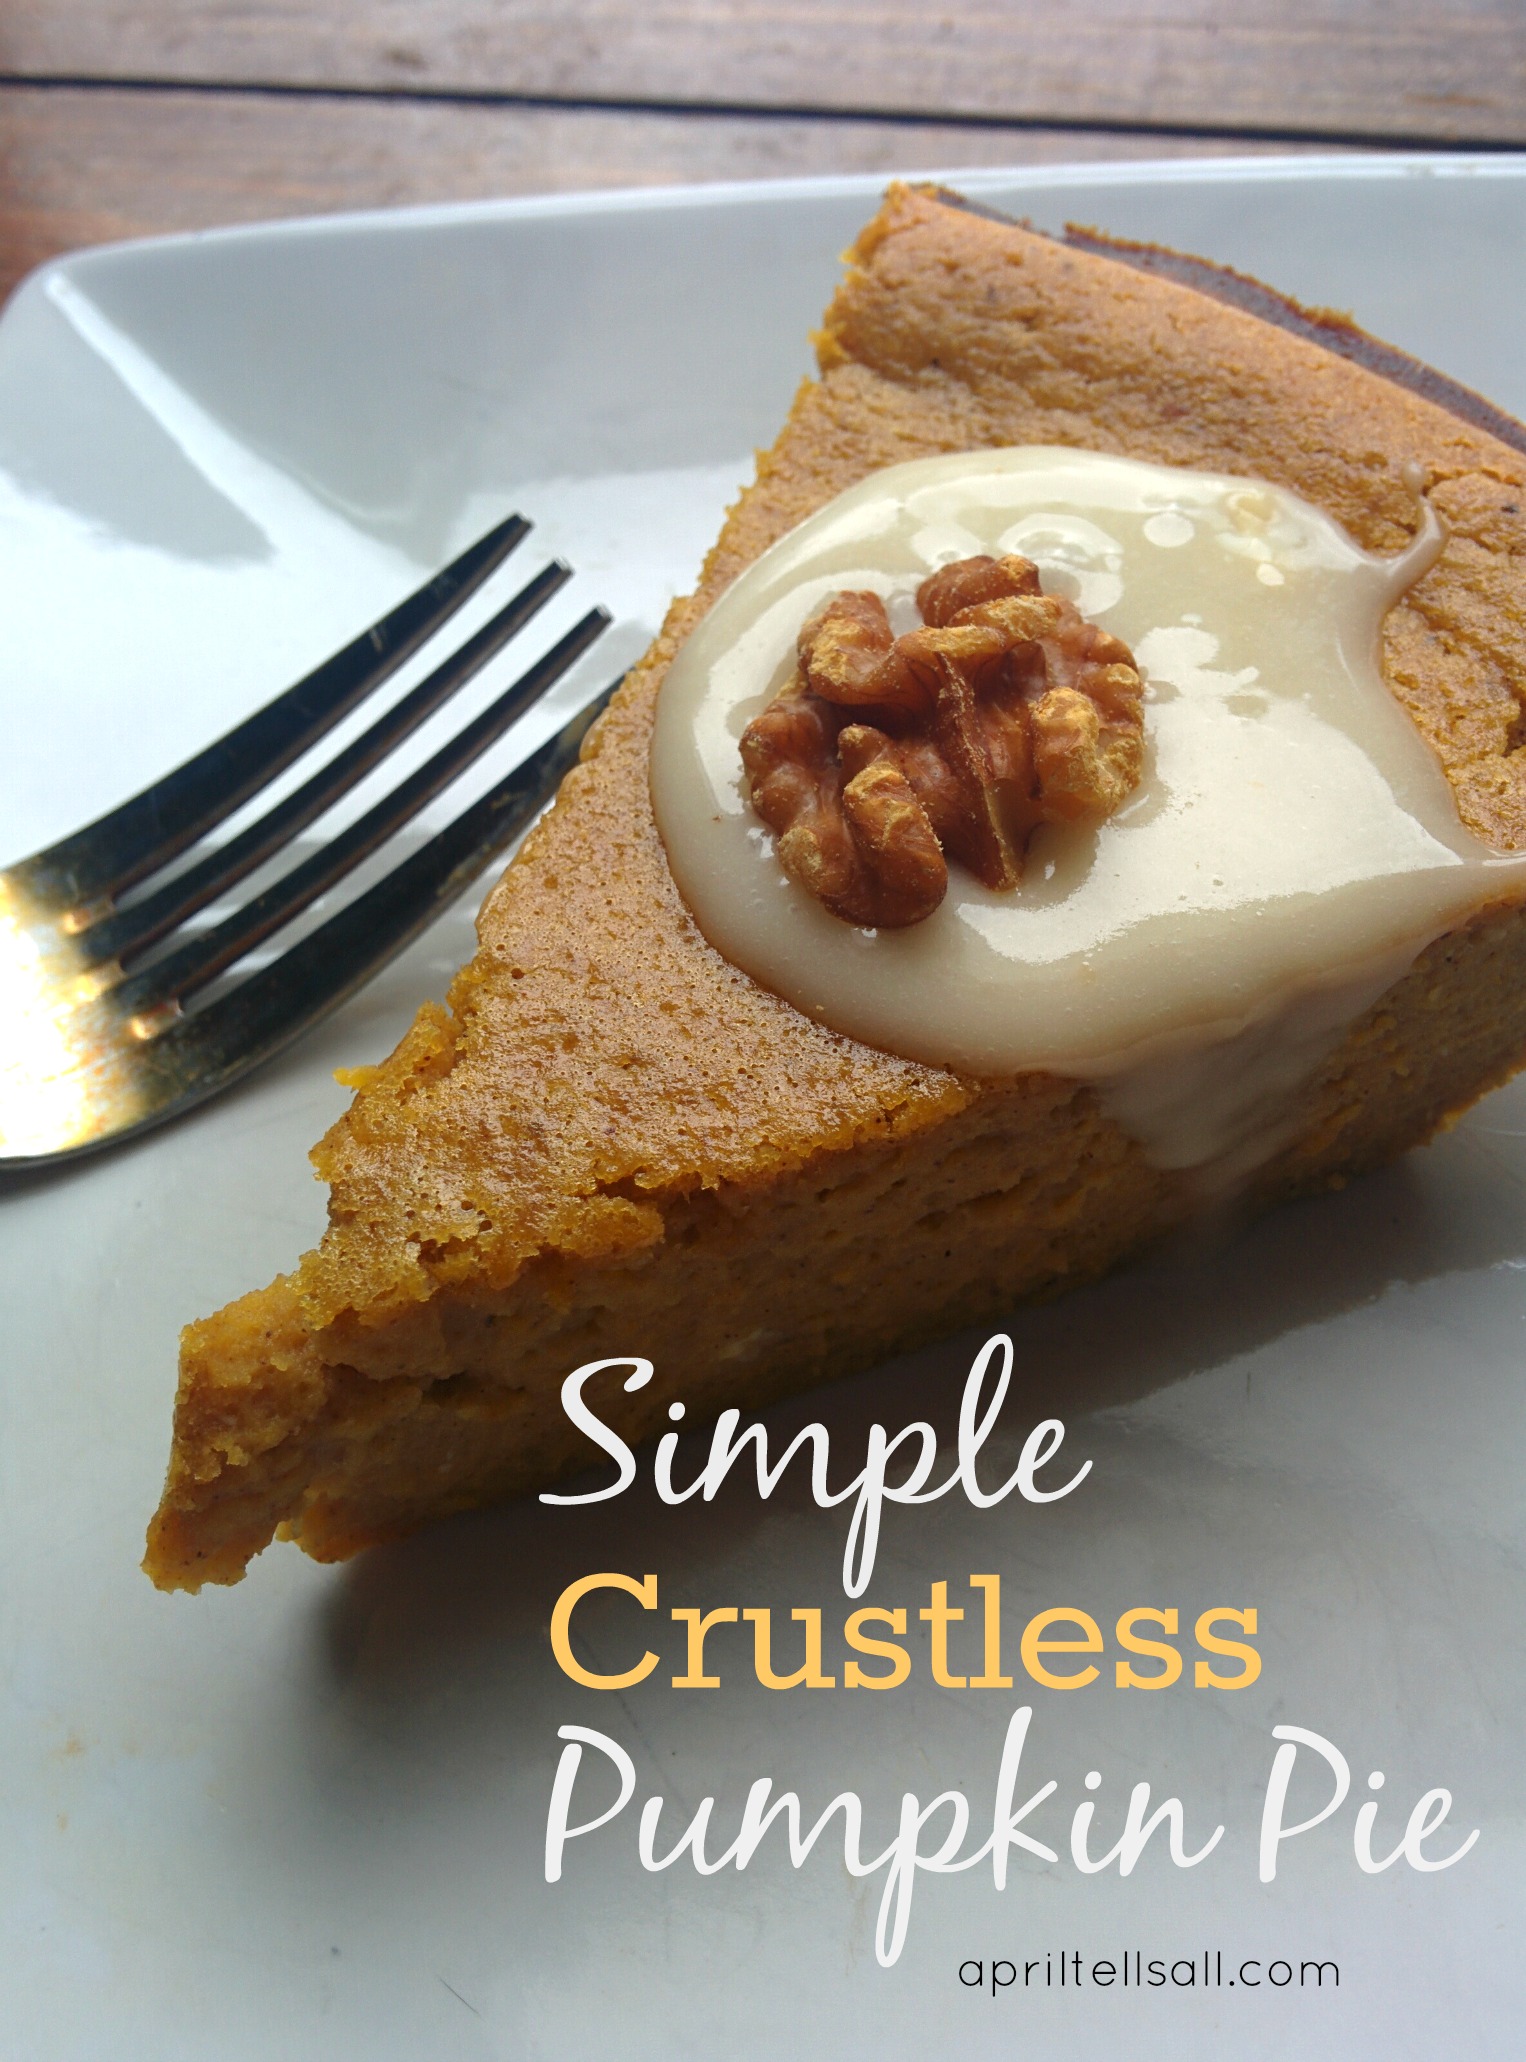 Simple Crustless Pumpkin Pie